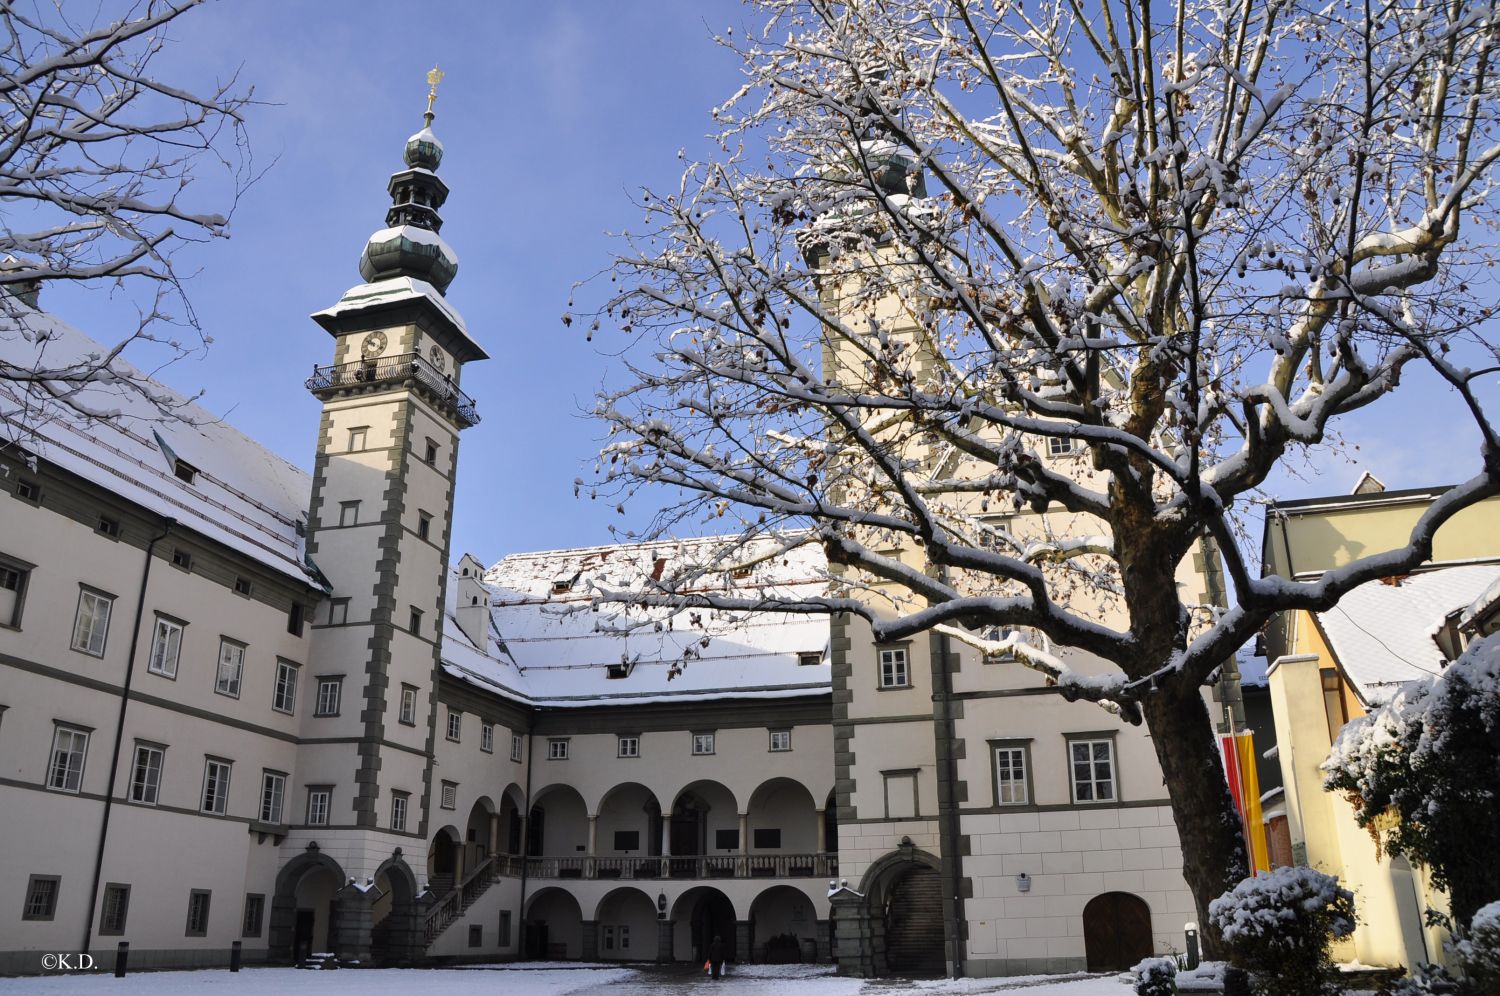 Landhaus in Klagenfurt im ersten Schnee